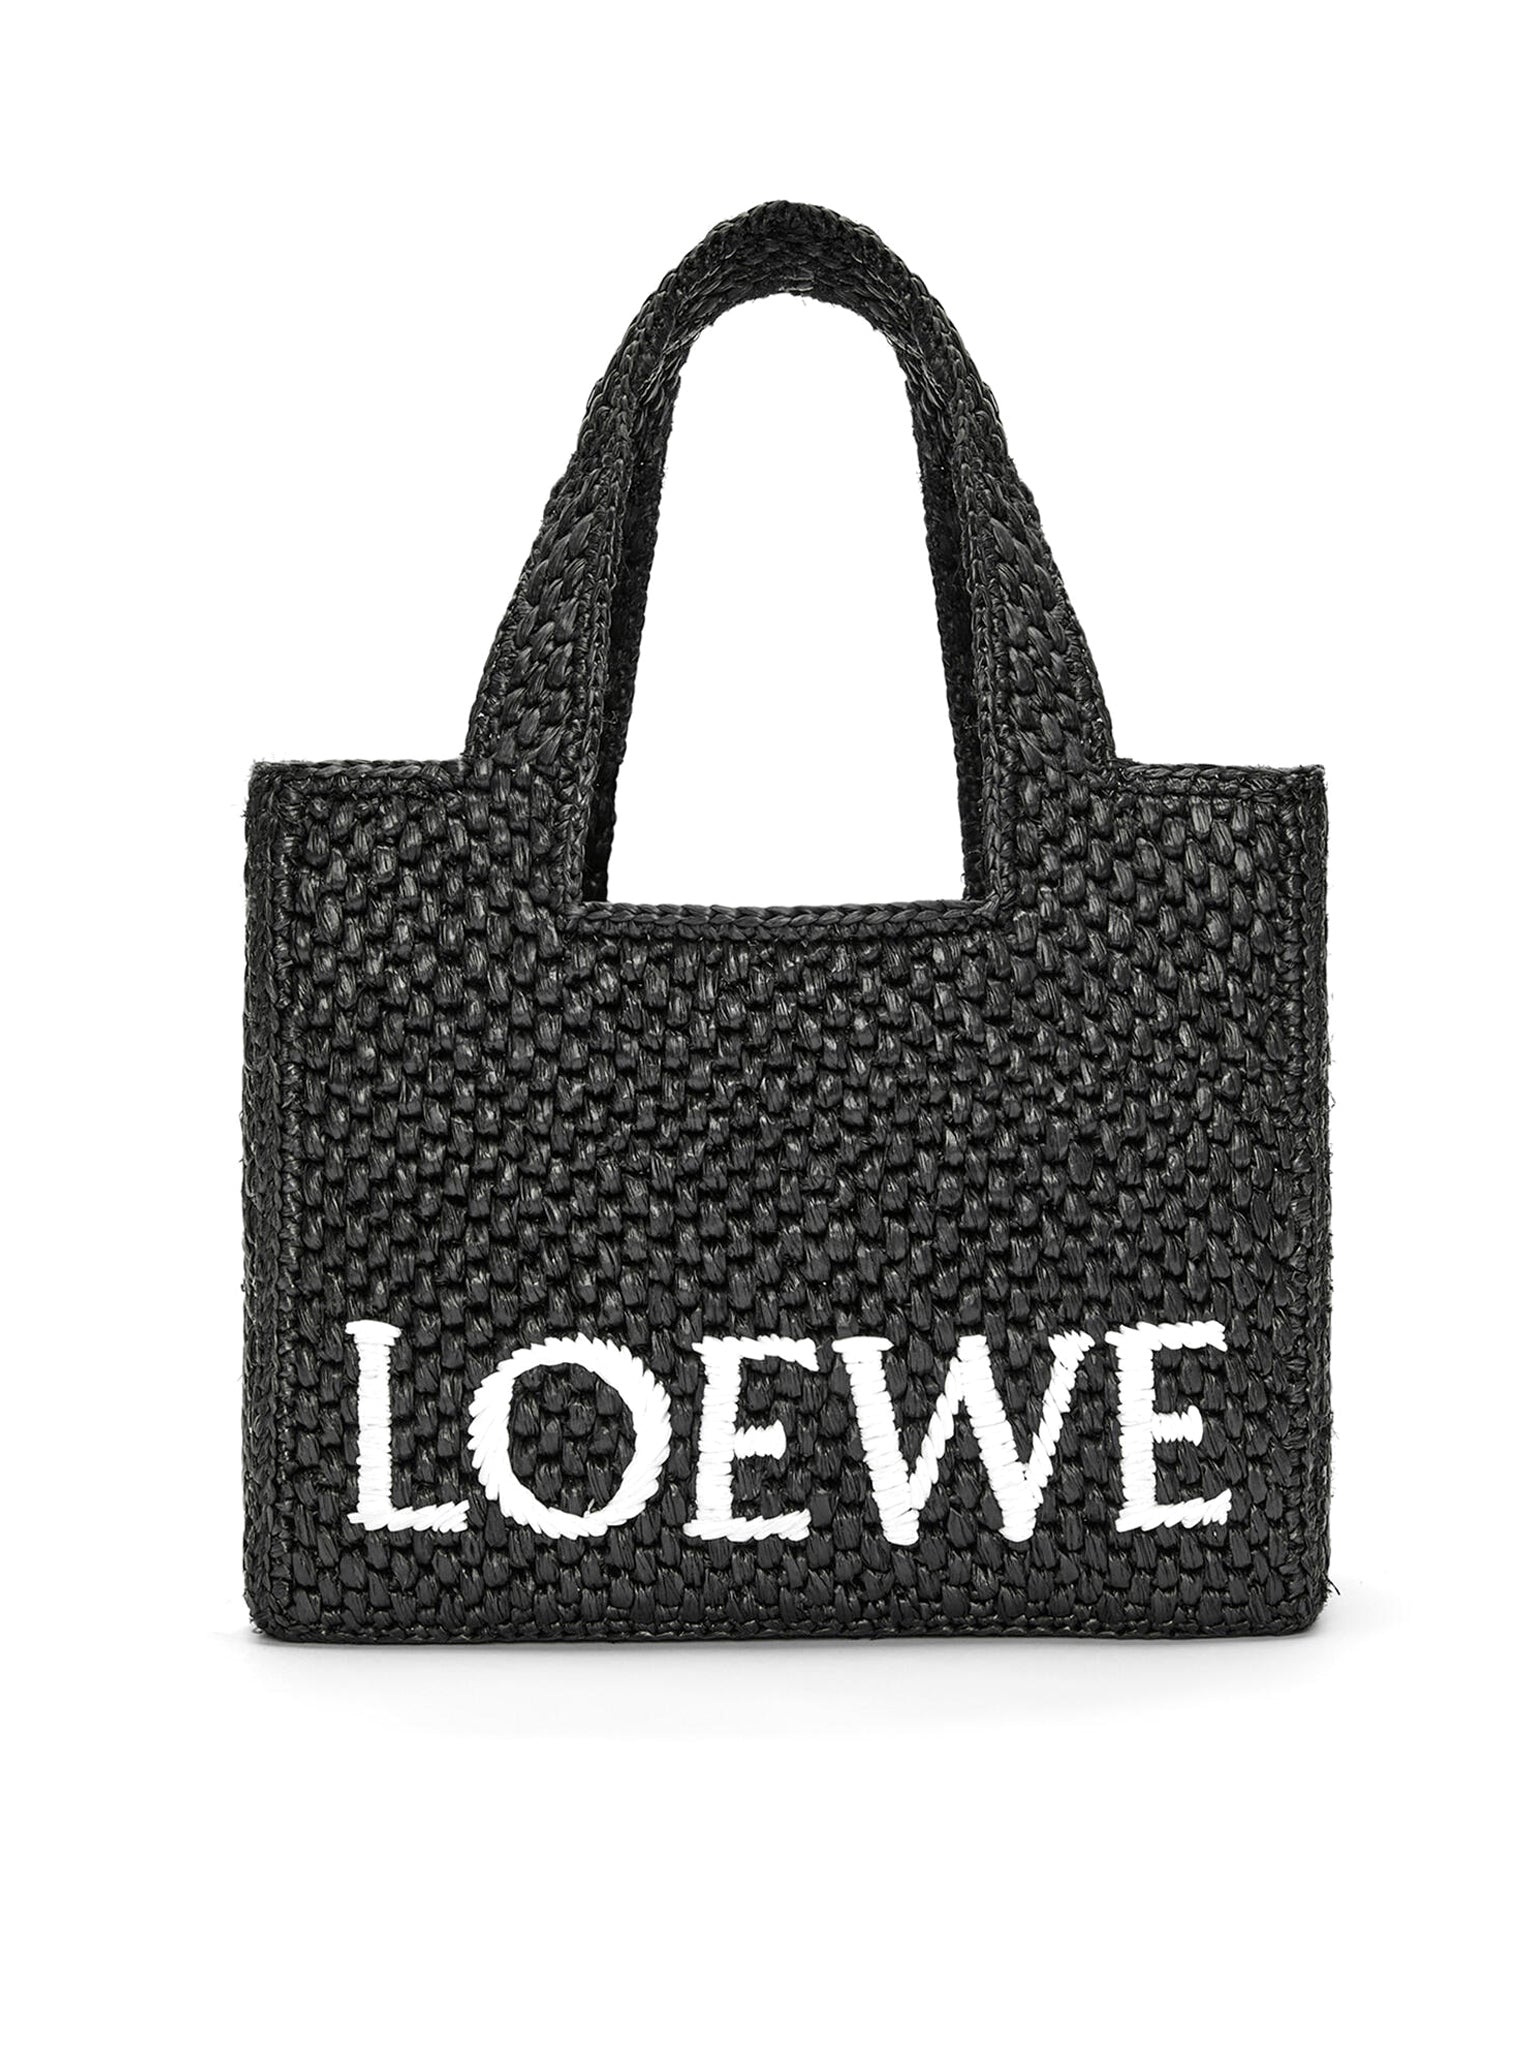 Loewe, la única marca española que participará en Les Journées